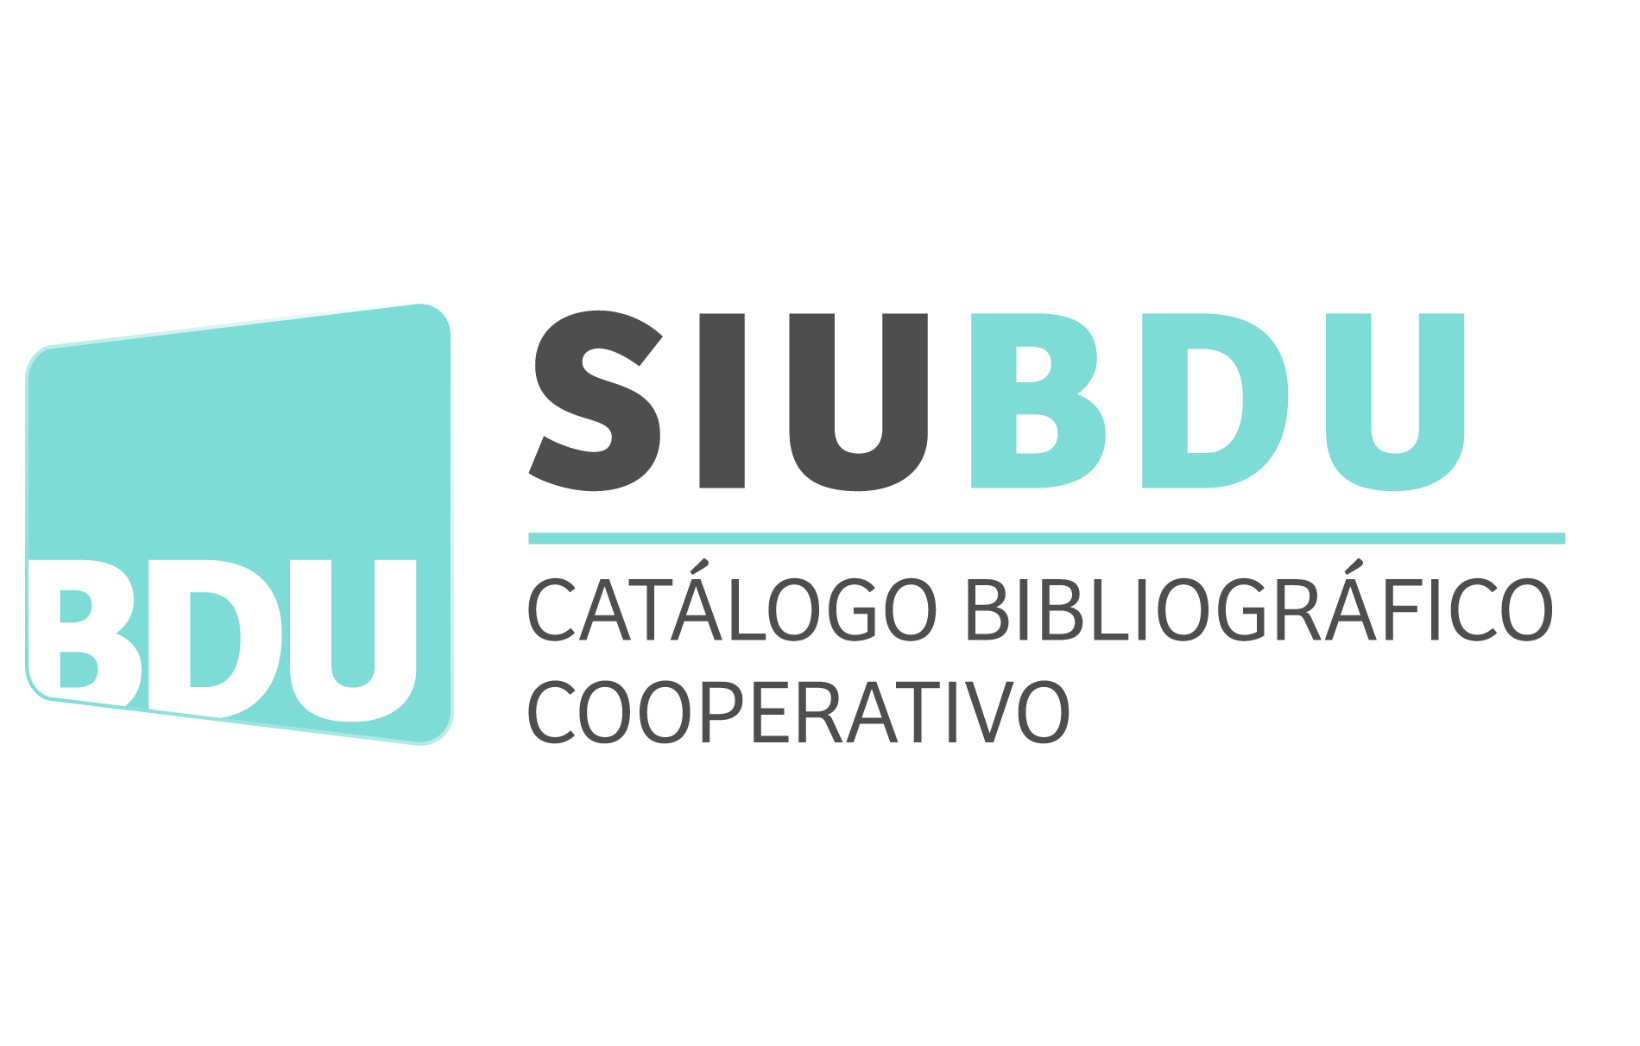 SIUBDU: Catálogo Bibliográfico Cooperativo